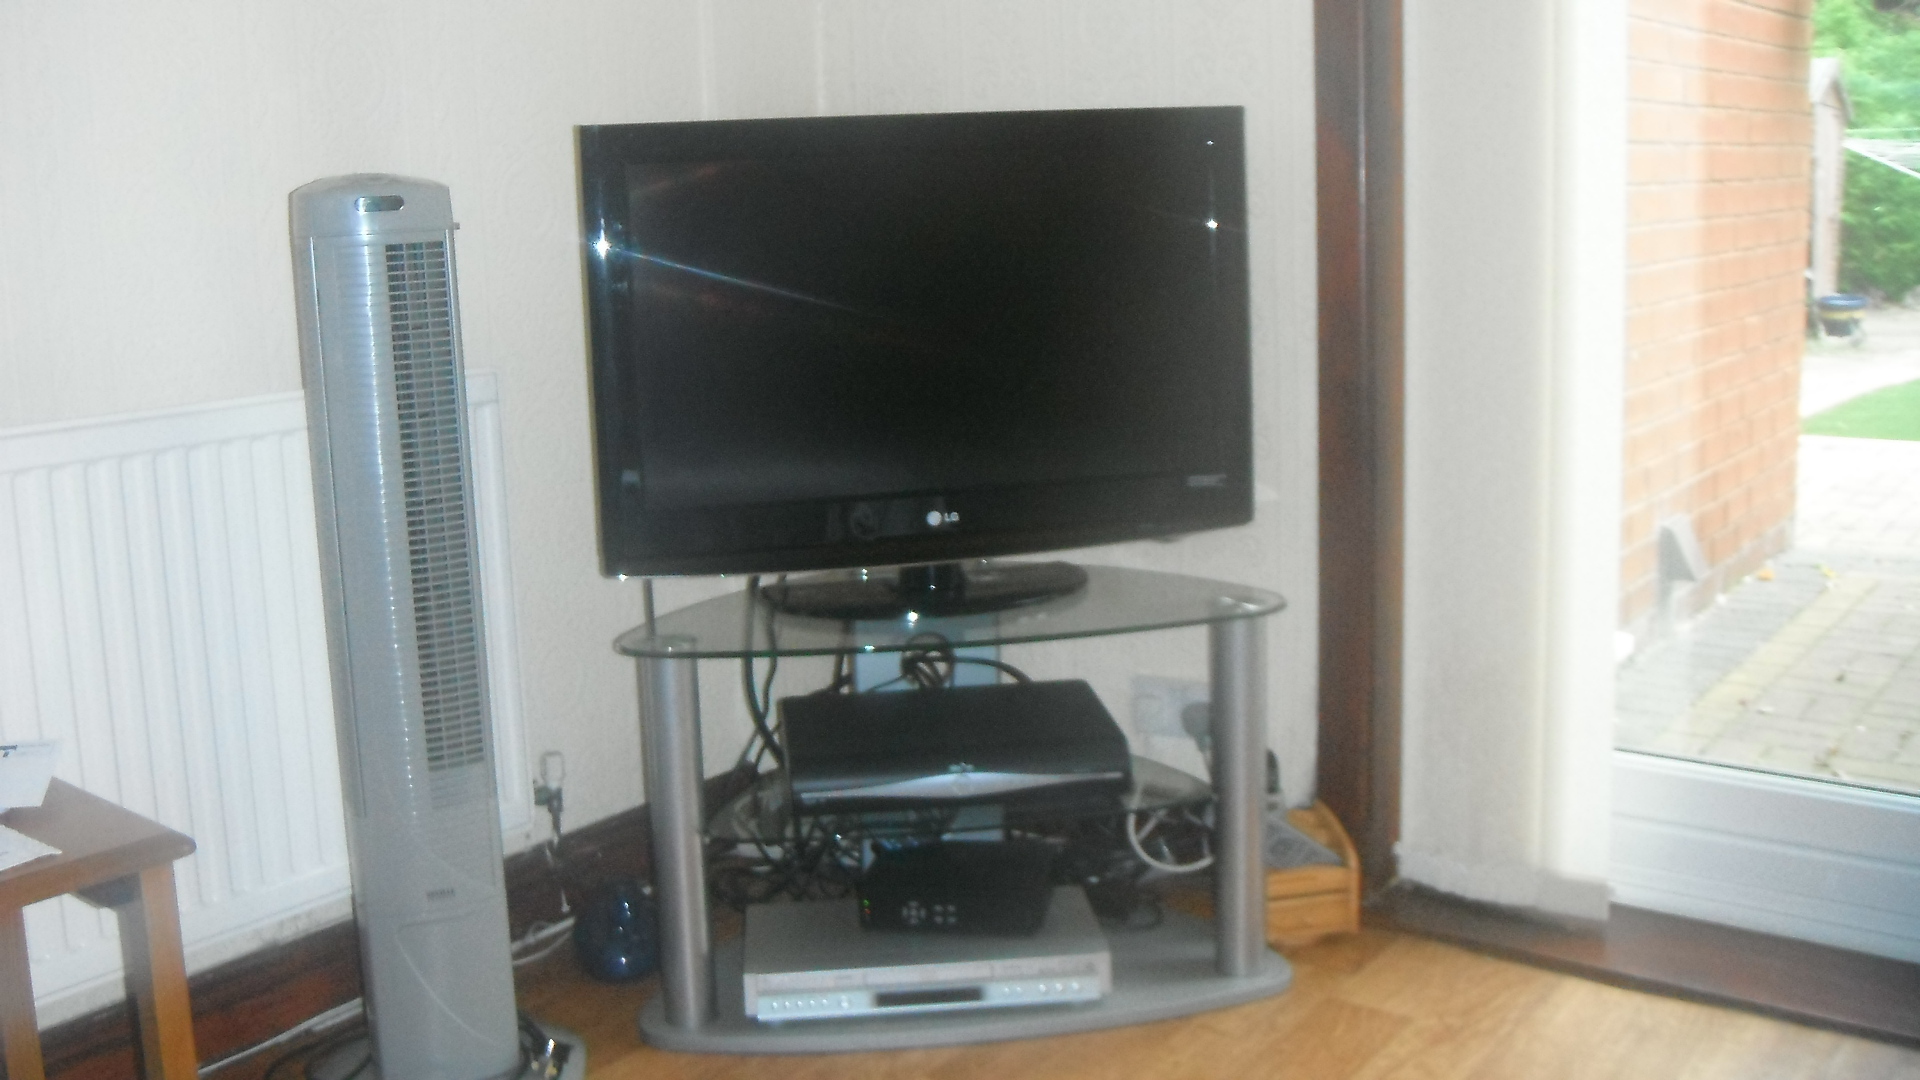 Photo – My TV set, taken by me.